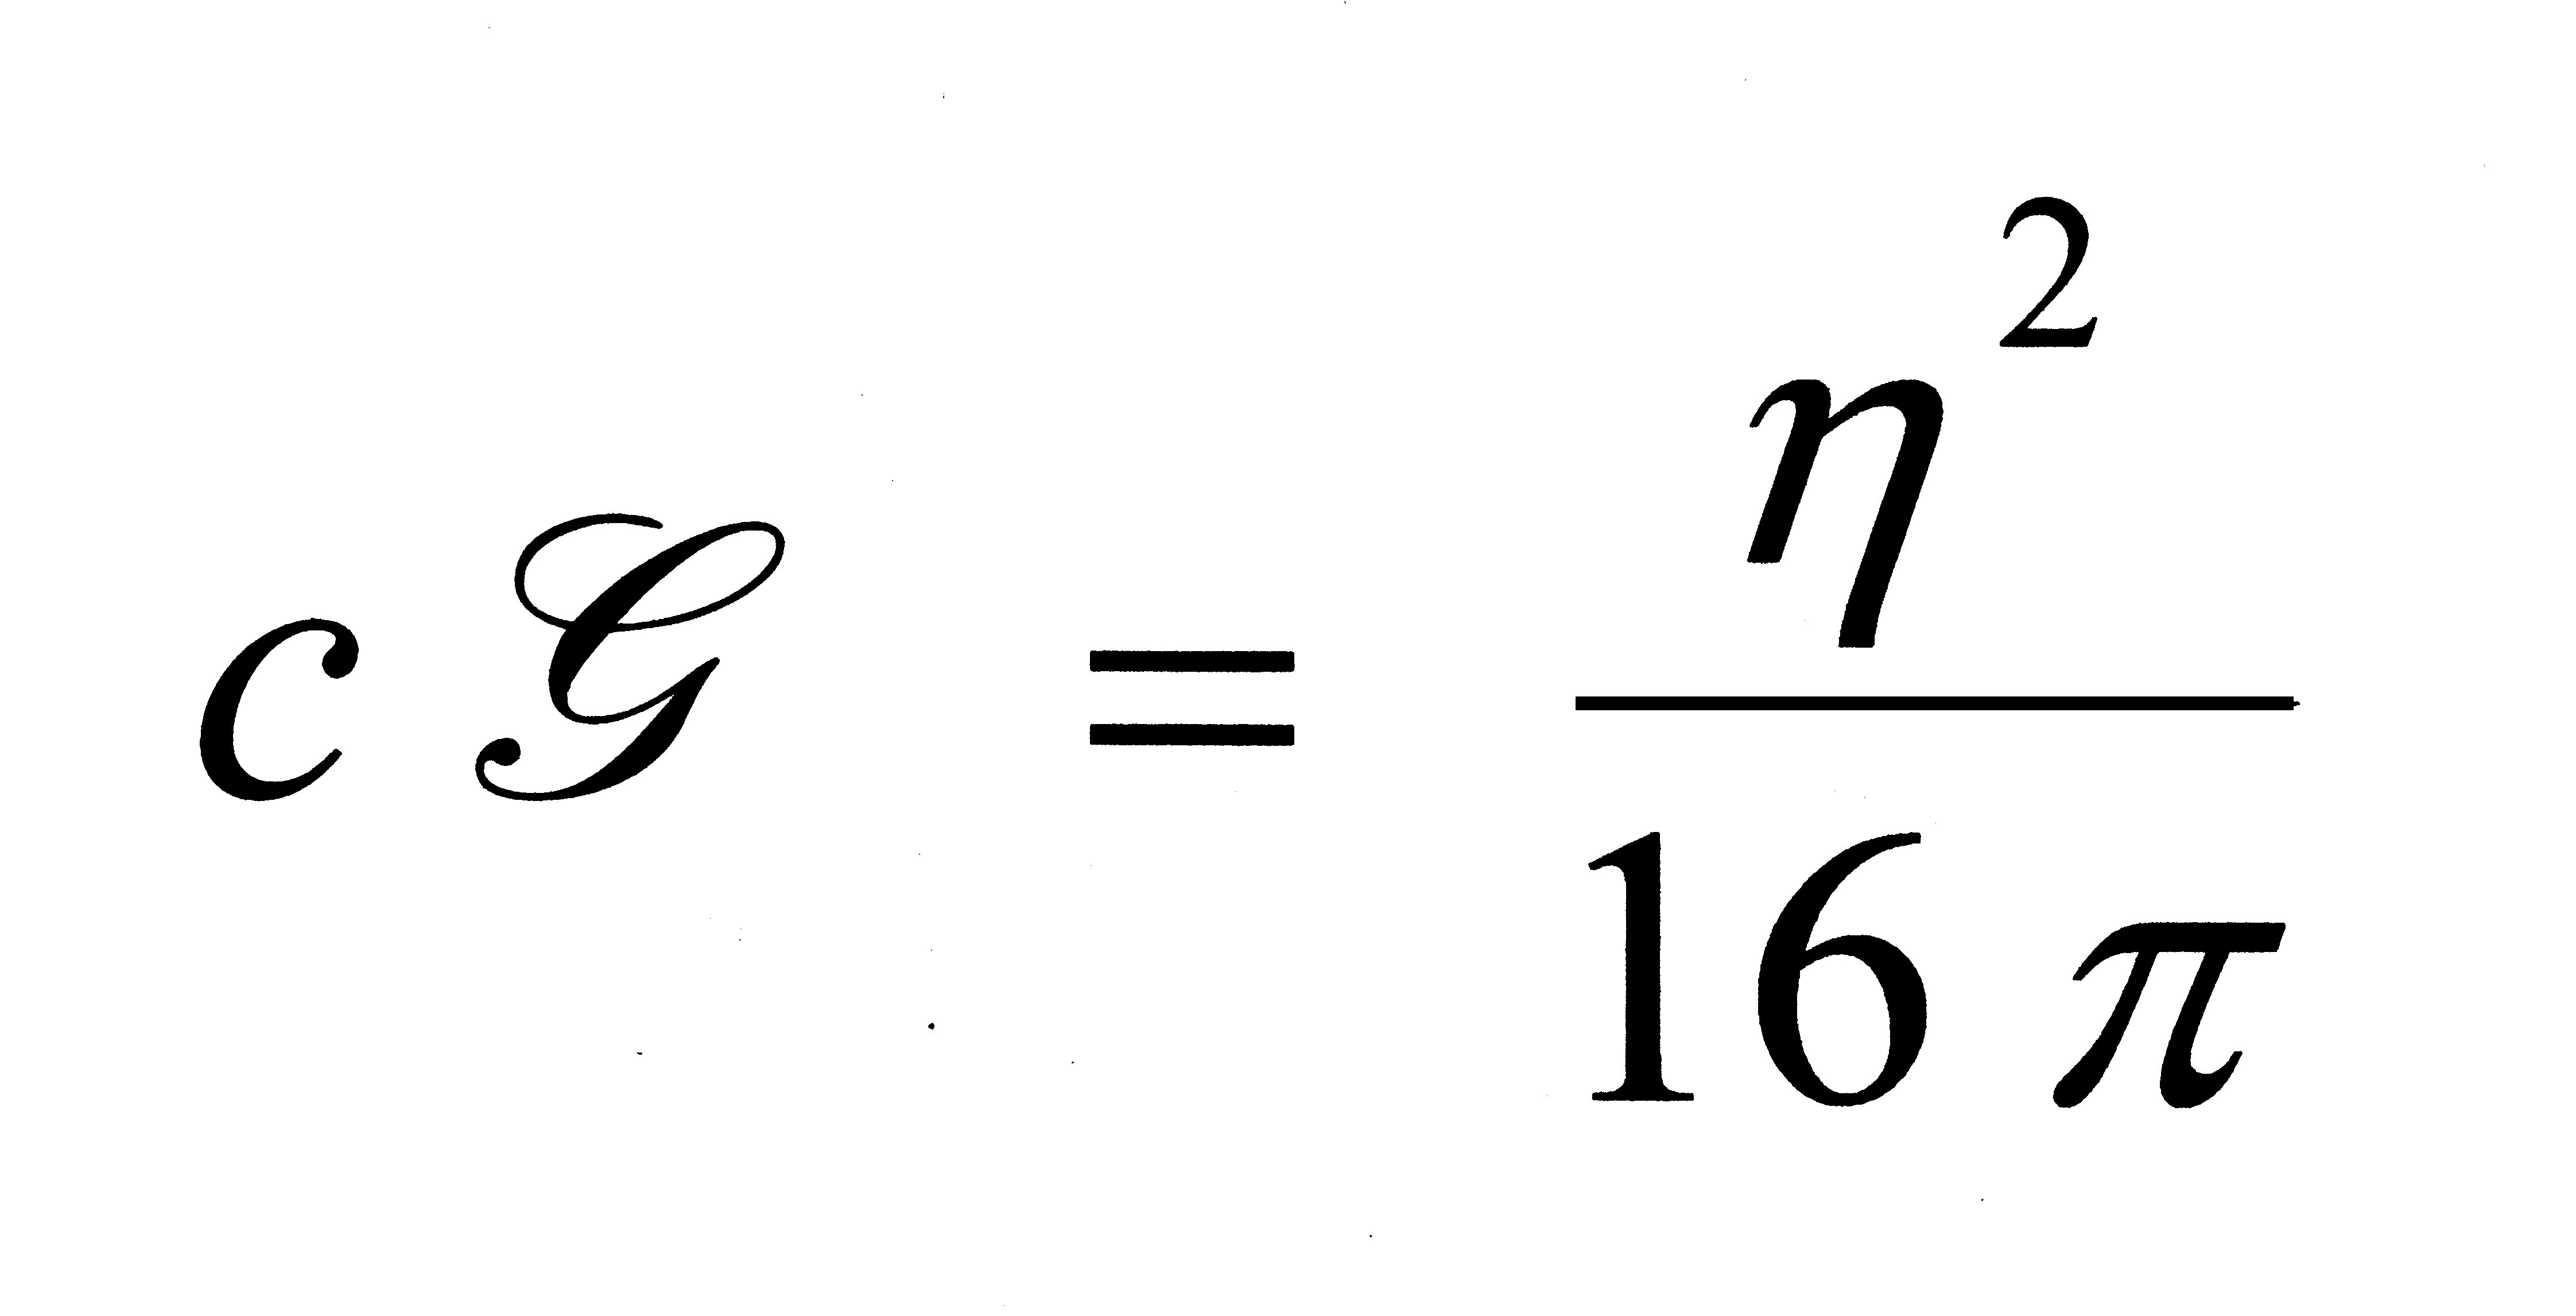 Cette formule garantit la validité de
 la théorie de l'espace-temps évolutif.